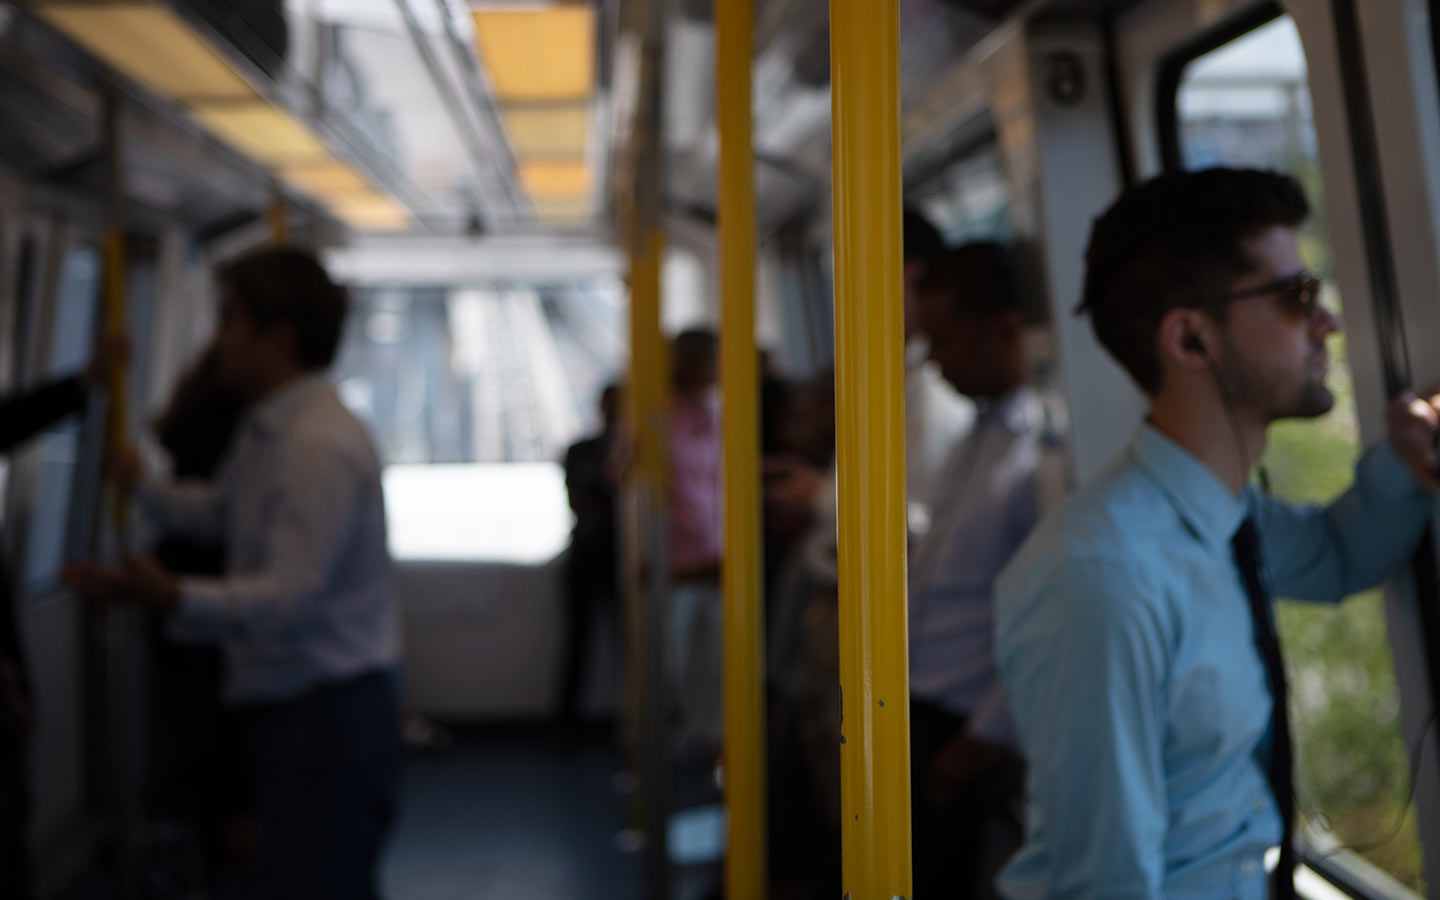 Pali gialli per la sicurezza dei passeggeri all'interno di Miami Metromover